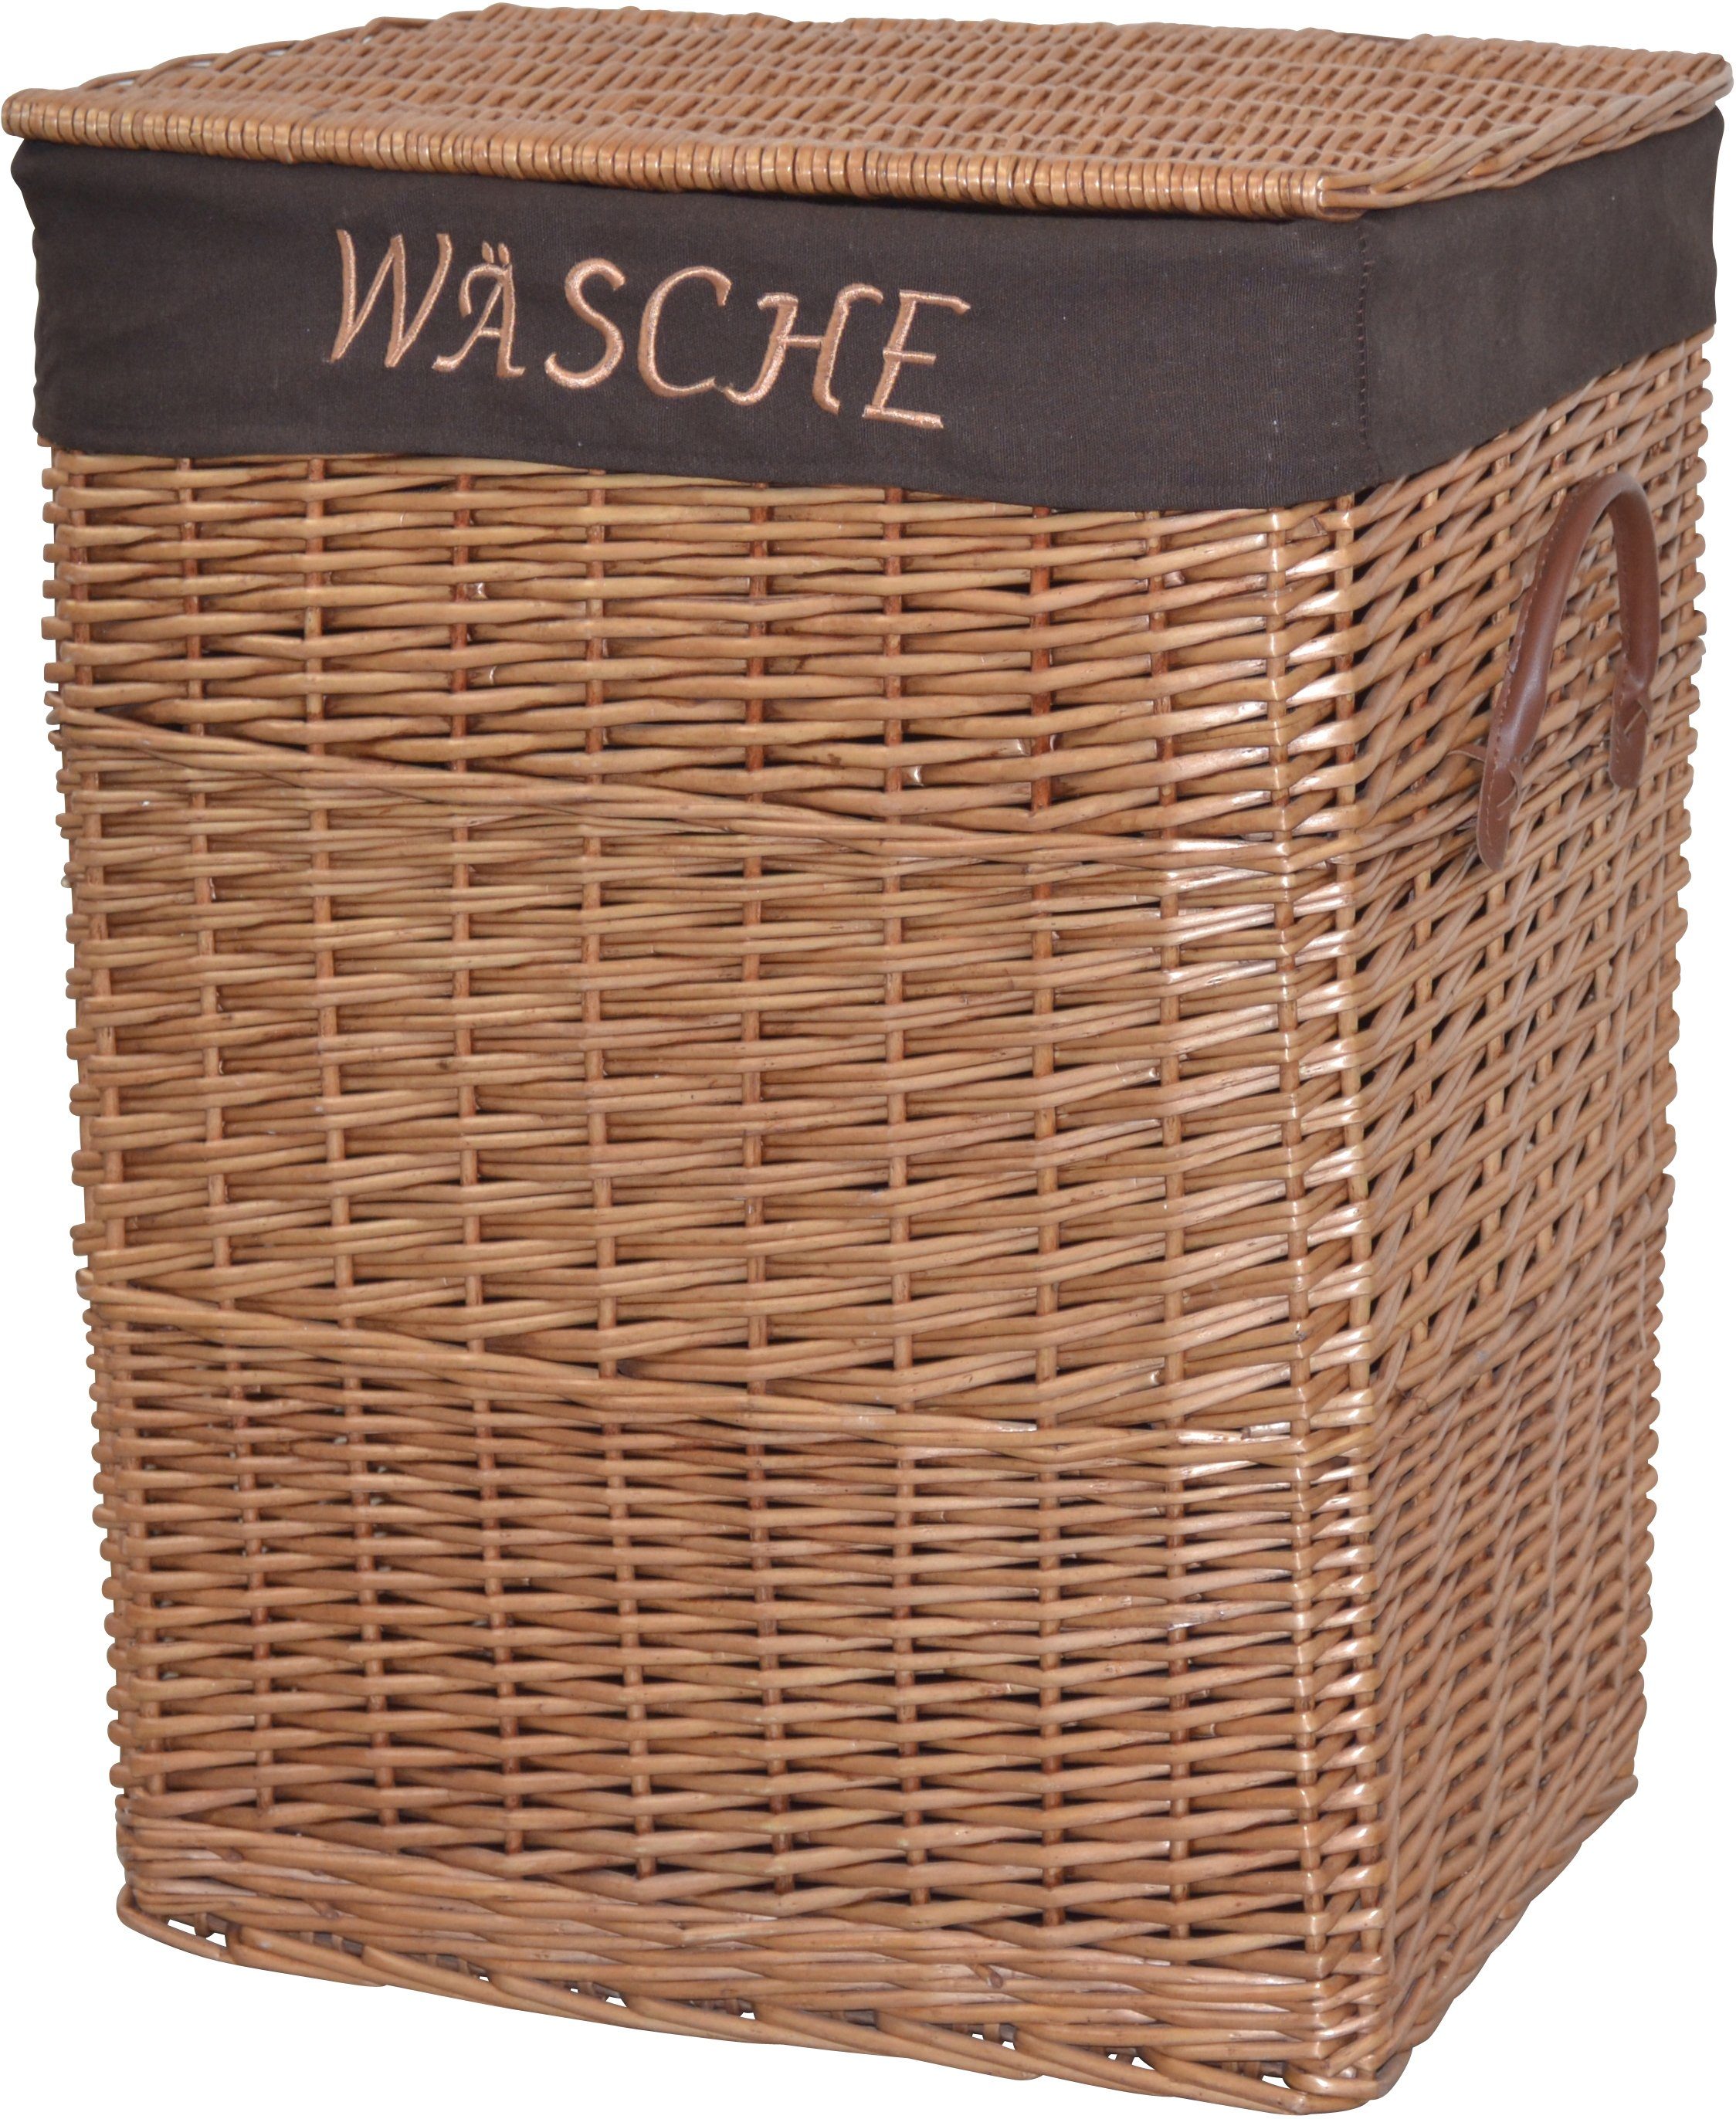 HOFMANN LIVING AND MORE Wäschekorb, aus Weide, handgefertigt mit herausnehmbarem Stoffeinsatz, 47x35x61cm braun | Wäschekörbe